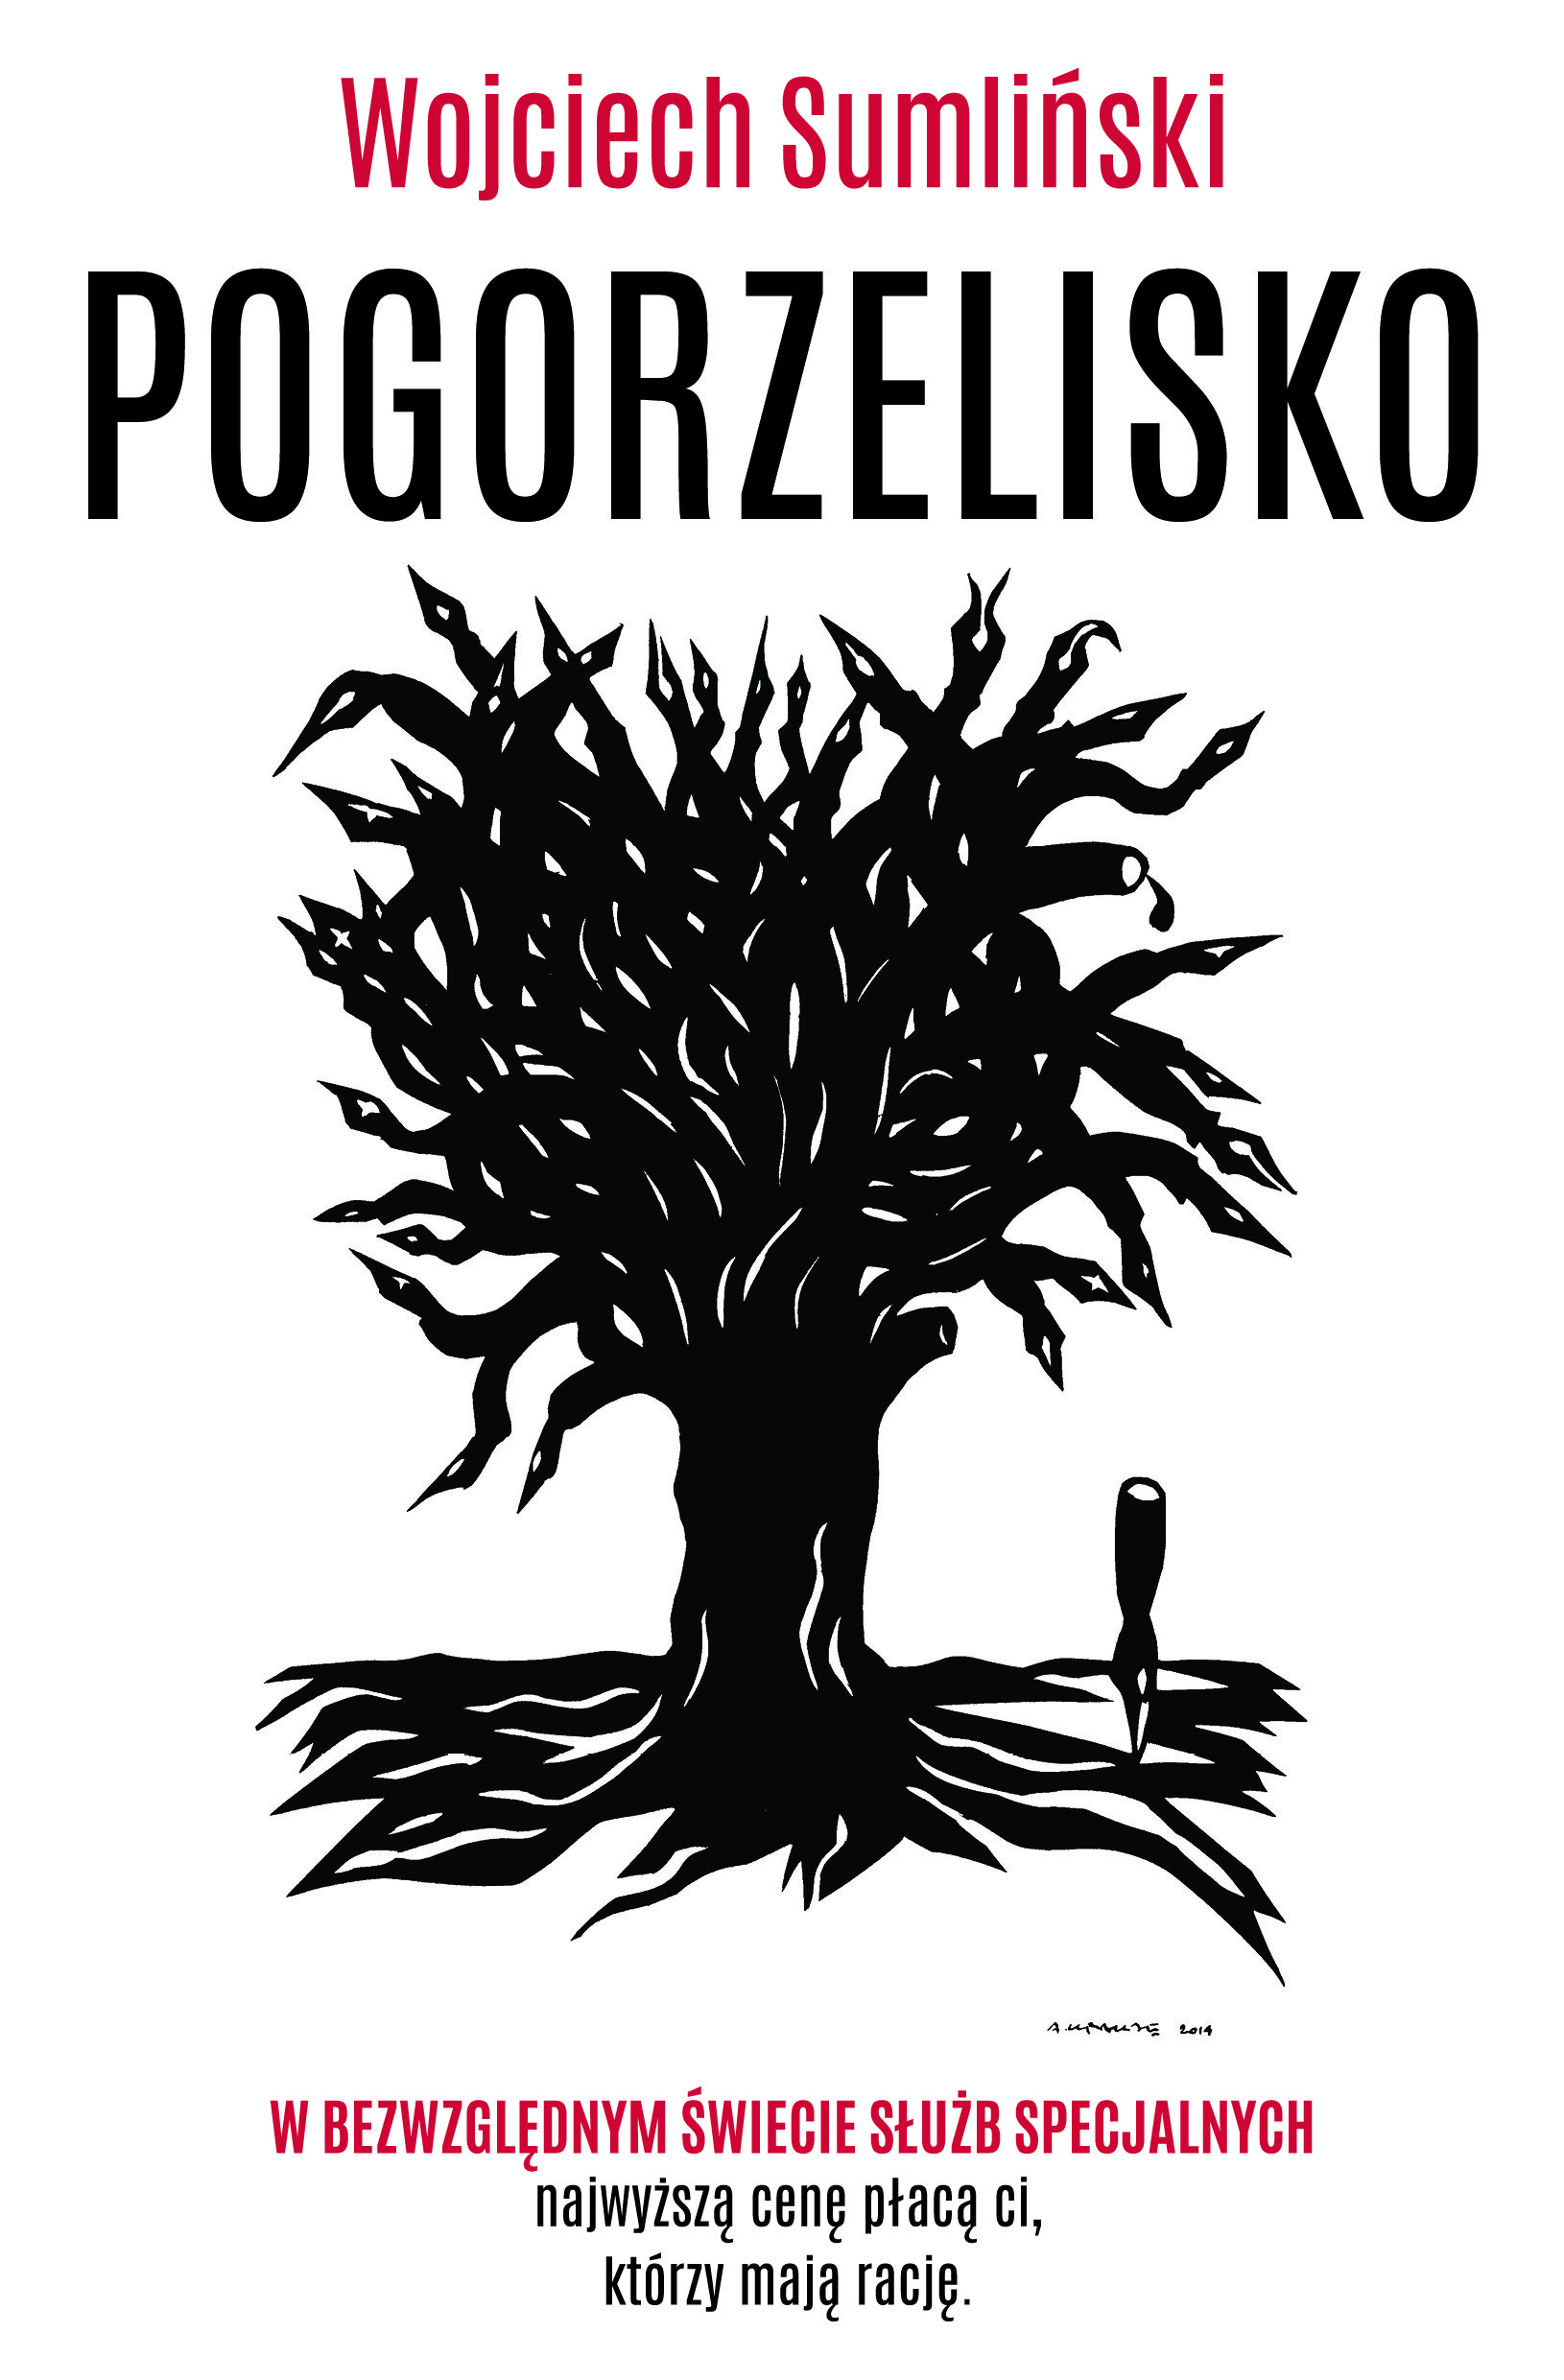 Wojciech Sumliński "Pogorzelisko"